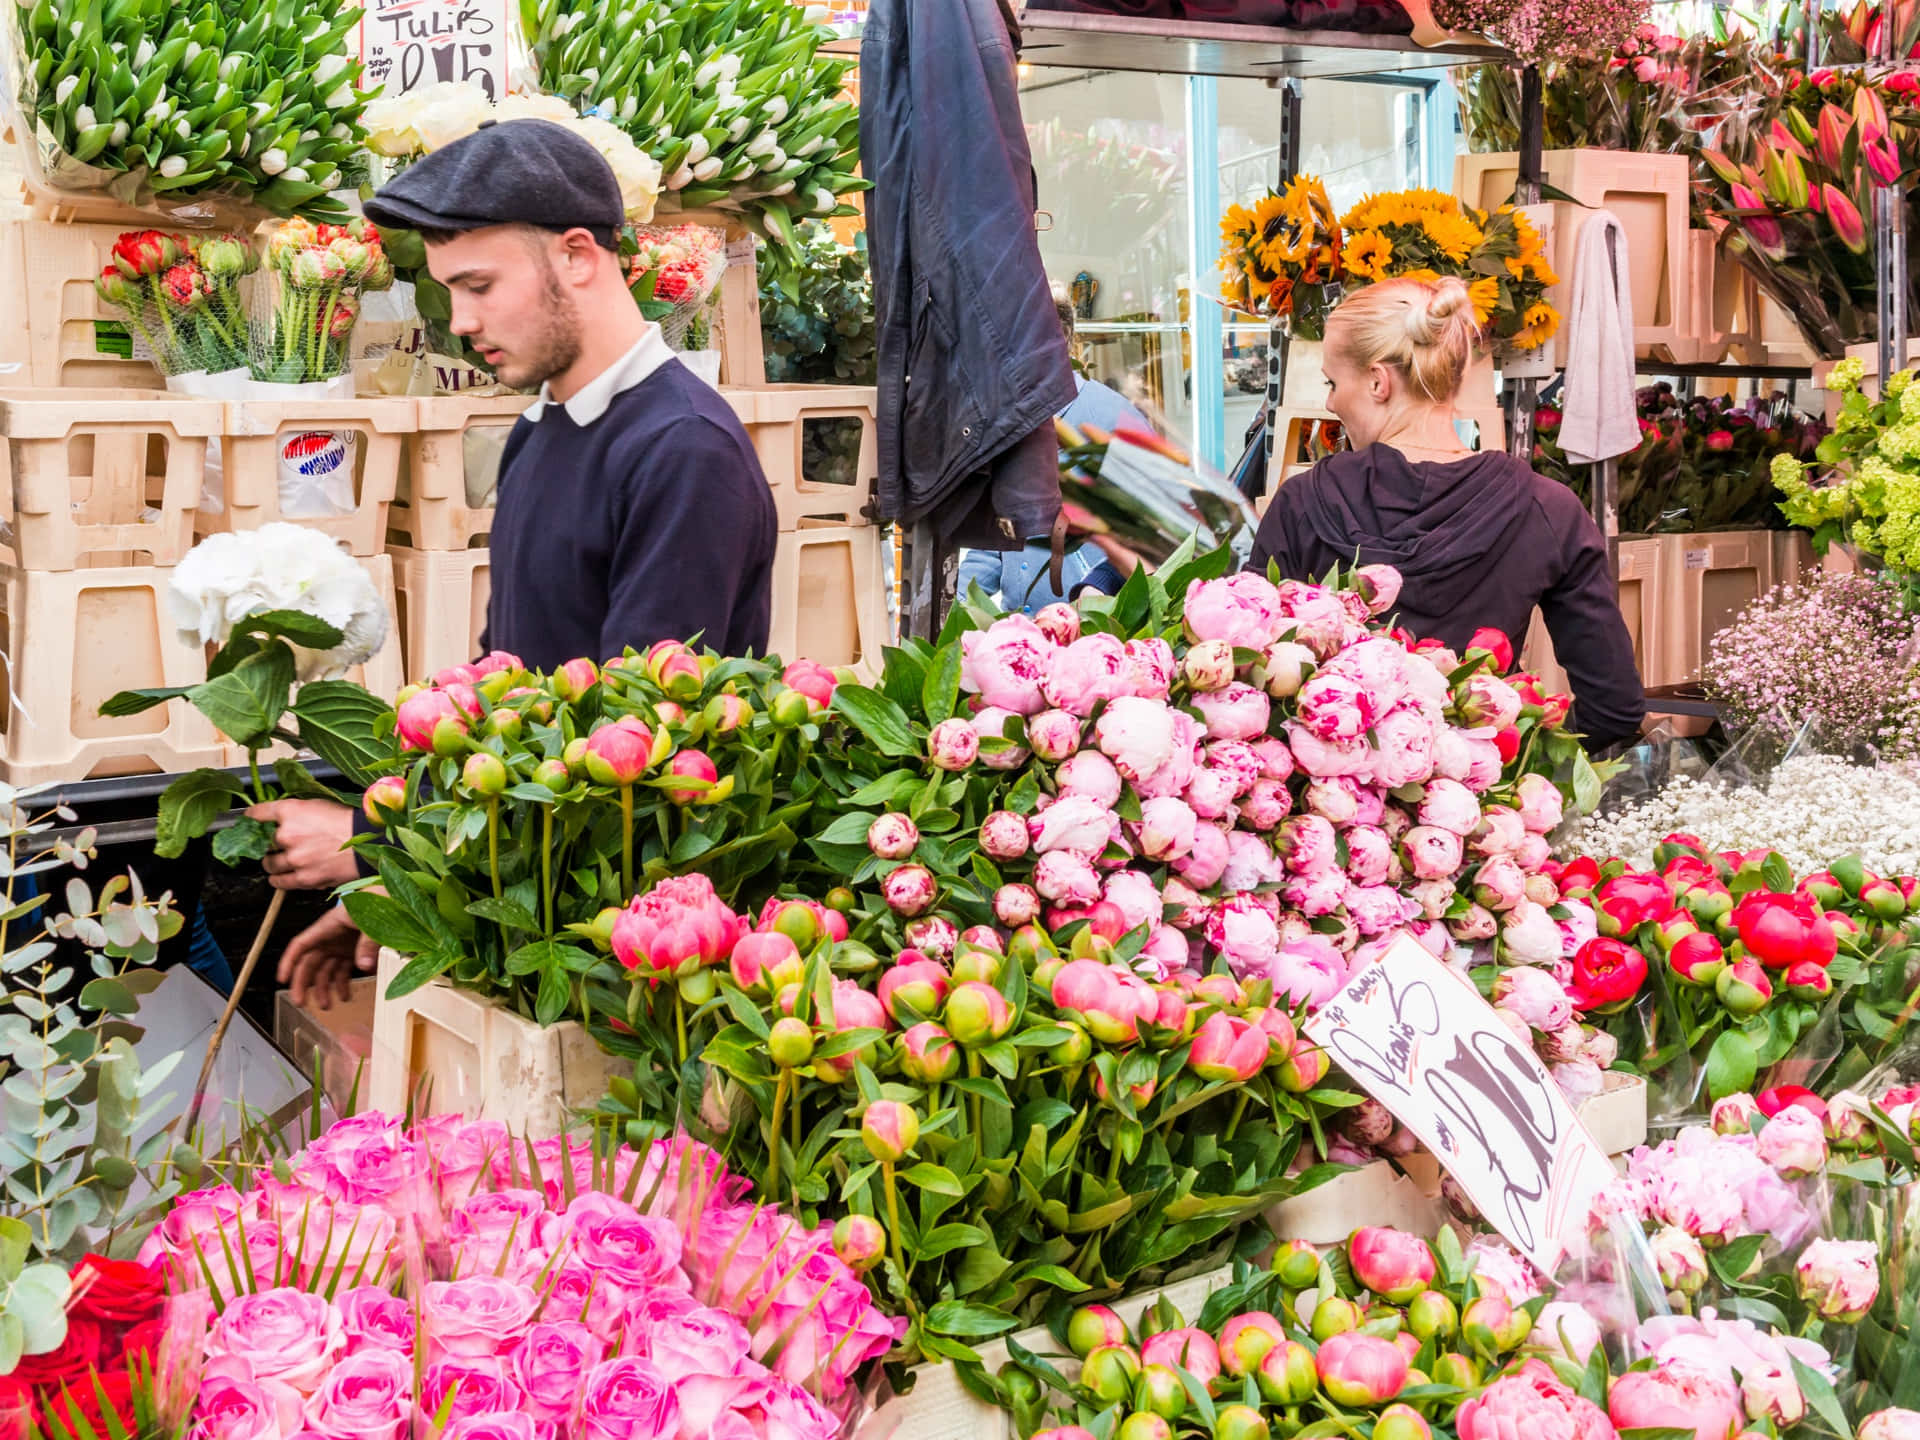 Crowded Flower Market in Full Bloom Wallpaper